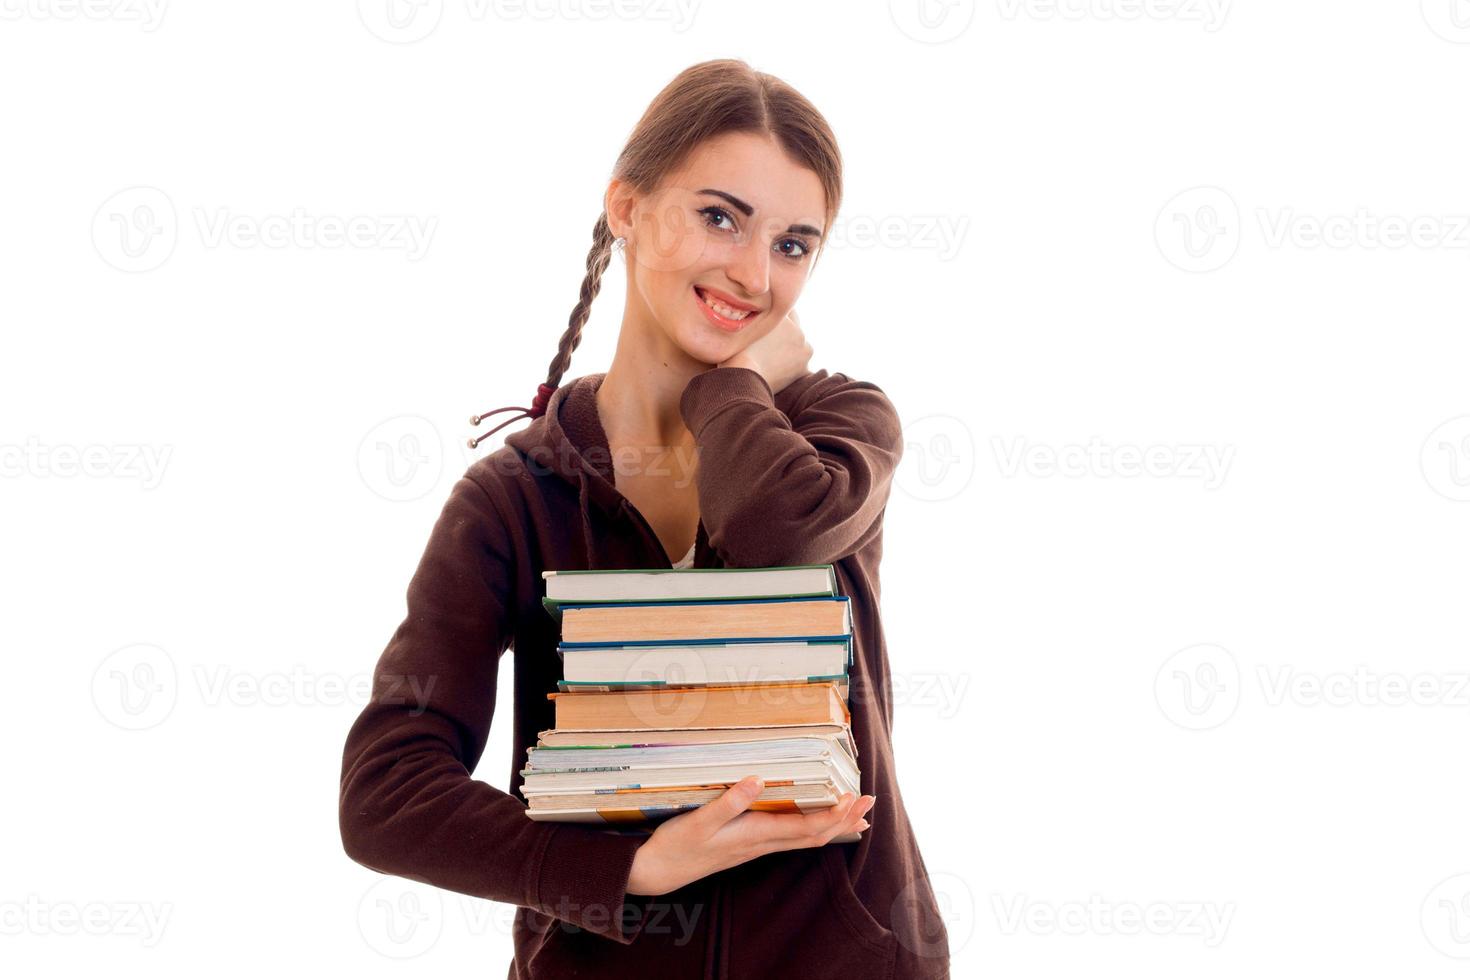 süßes jugendlich Mädchen mit Zöpfen, das lächelt und ein Buch in ihren Händen hält foto